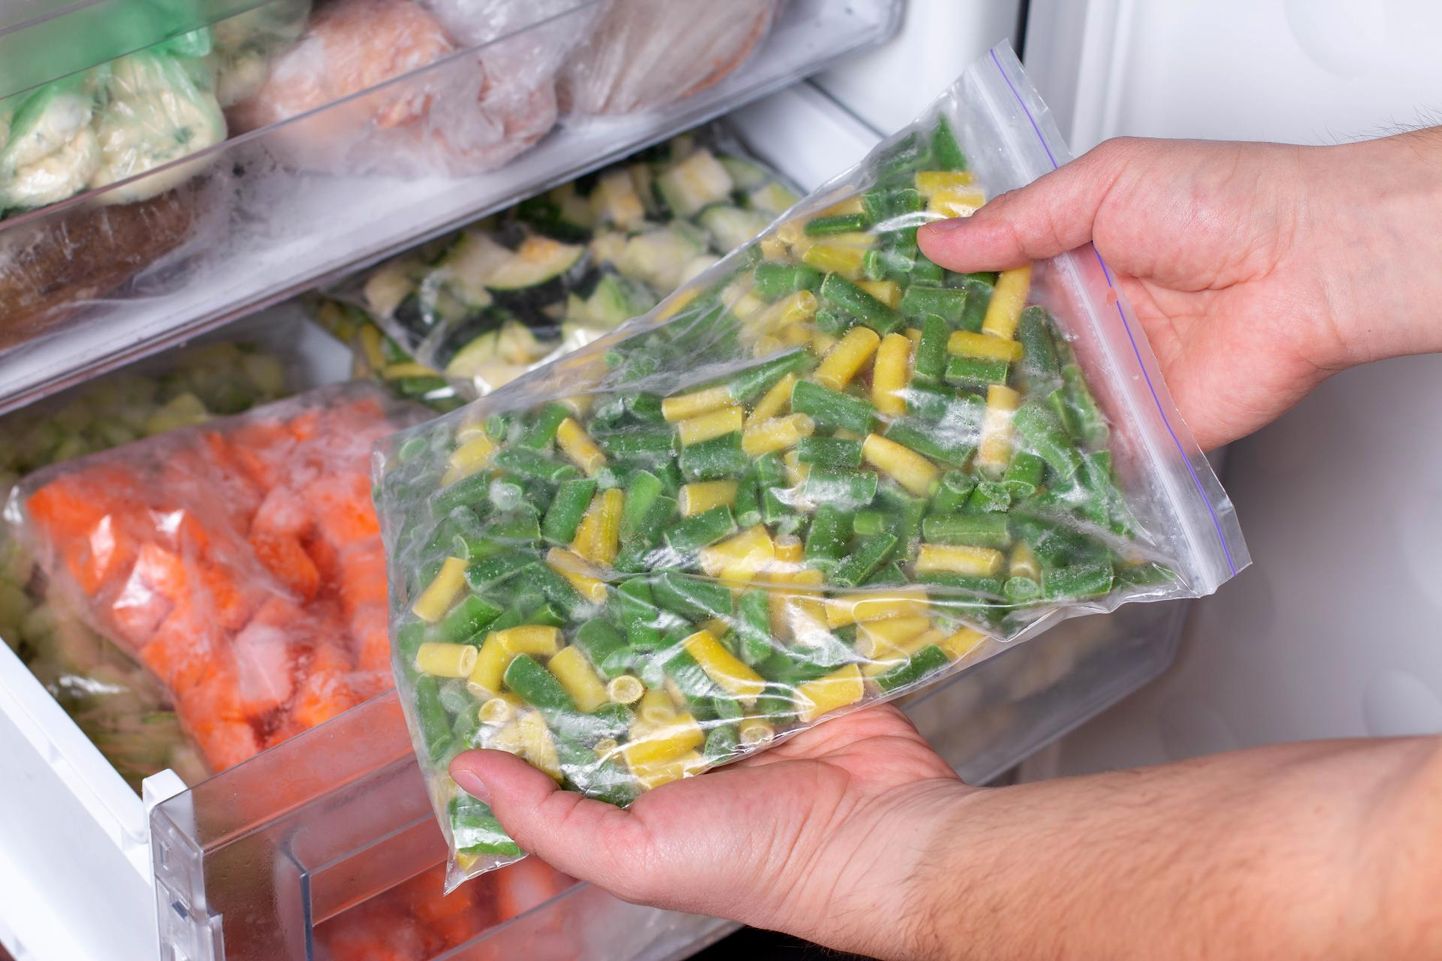 Kodukülmikus peaks eelistama soonkinnisega Minigripi kilekotte või teisi taassuletavaid külmikukotte. Samuti tuleks kasutada külmutamiseks mõeldud karpe.